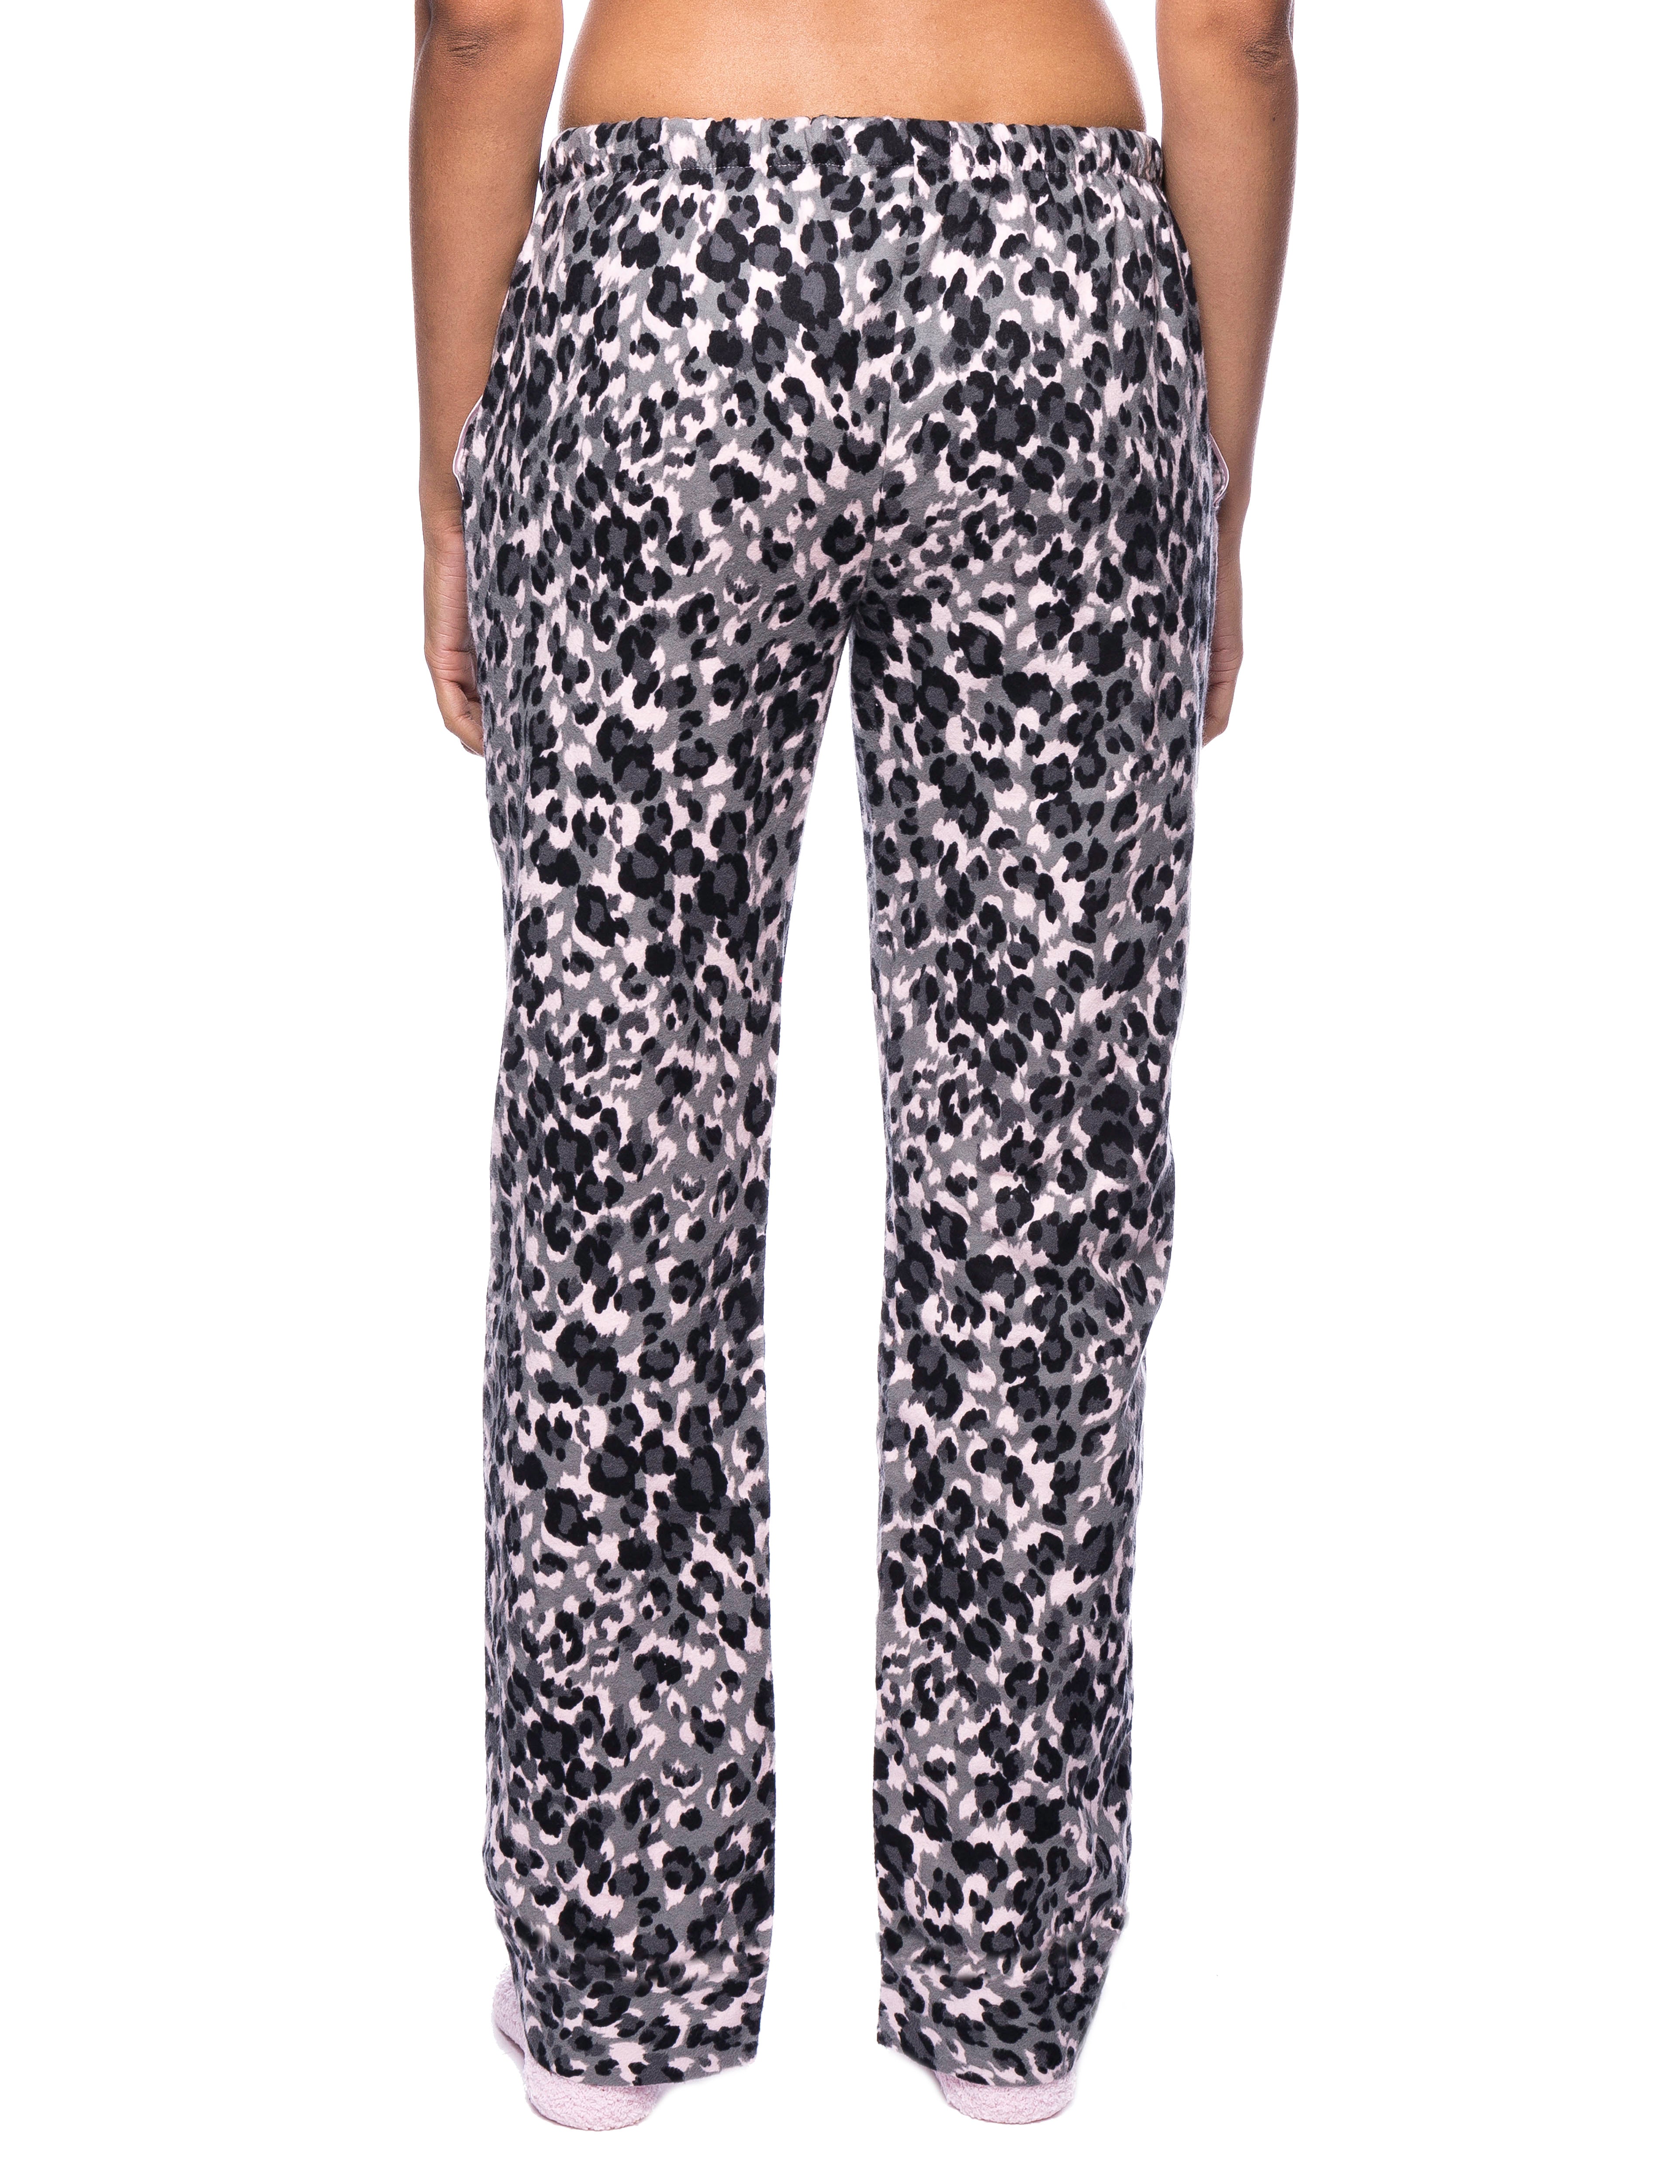 Womens Premium 100% Cotton Flannel Lounge Pants - Leopard Pink